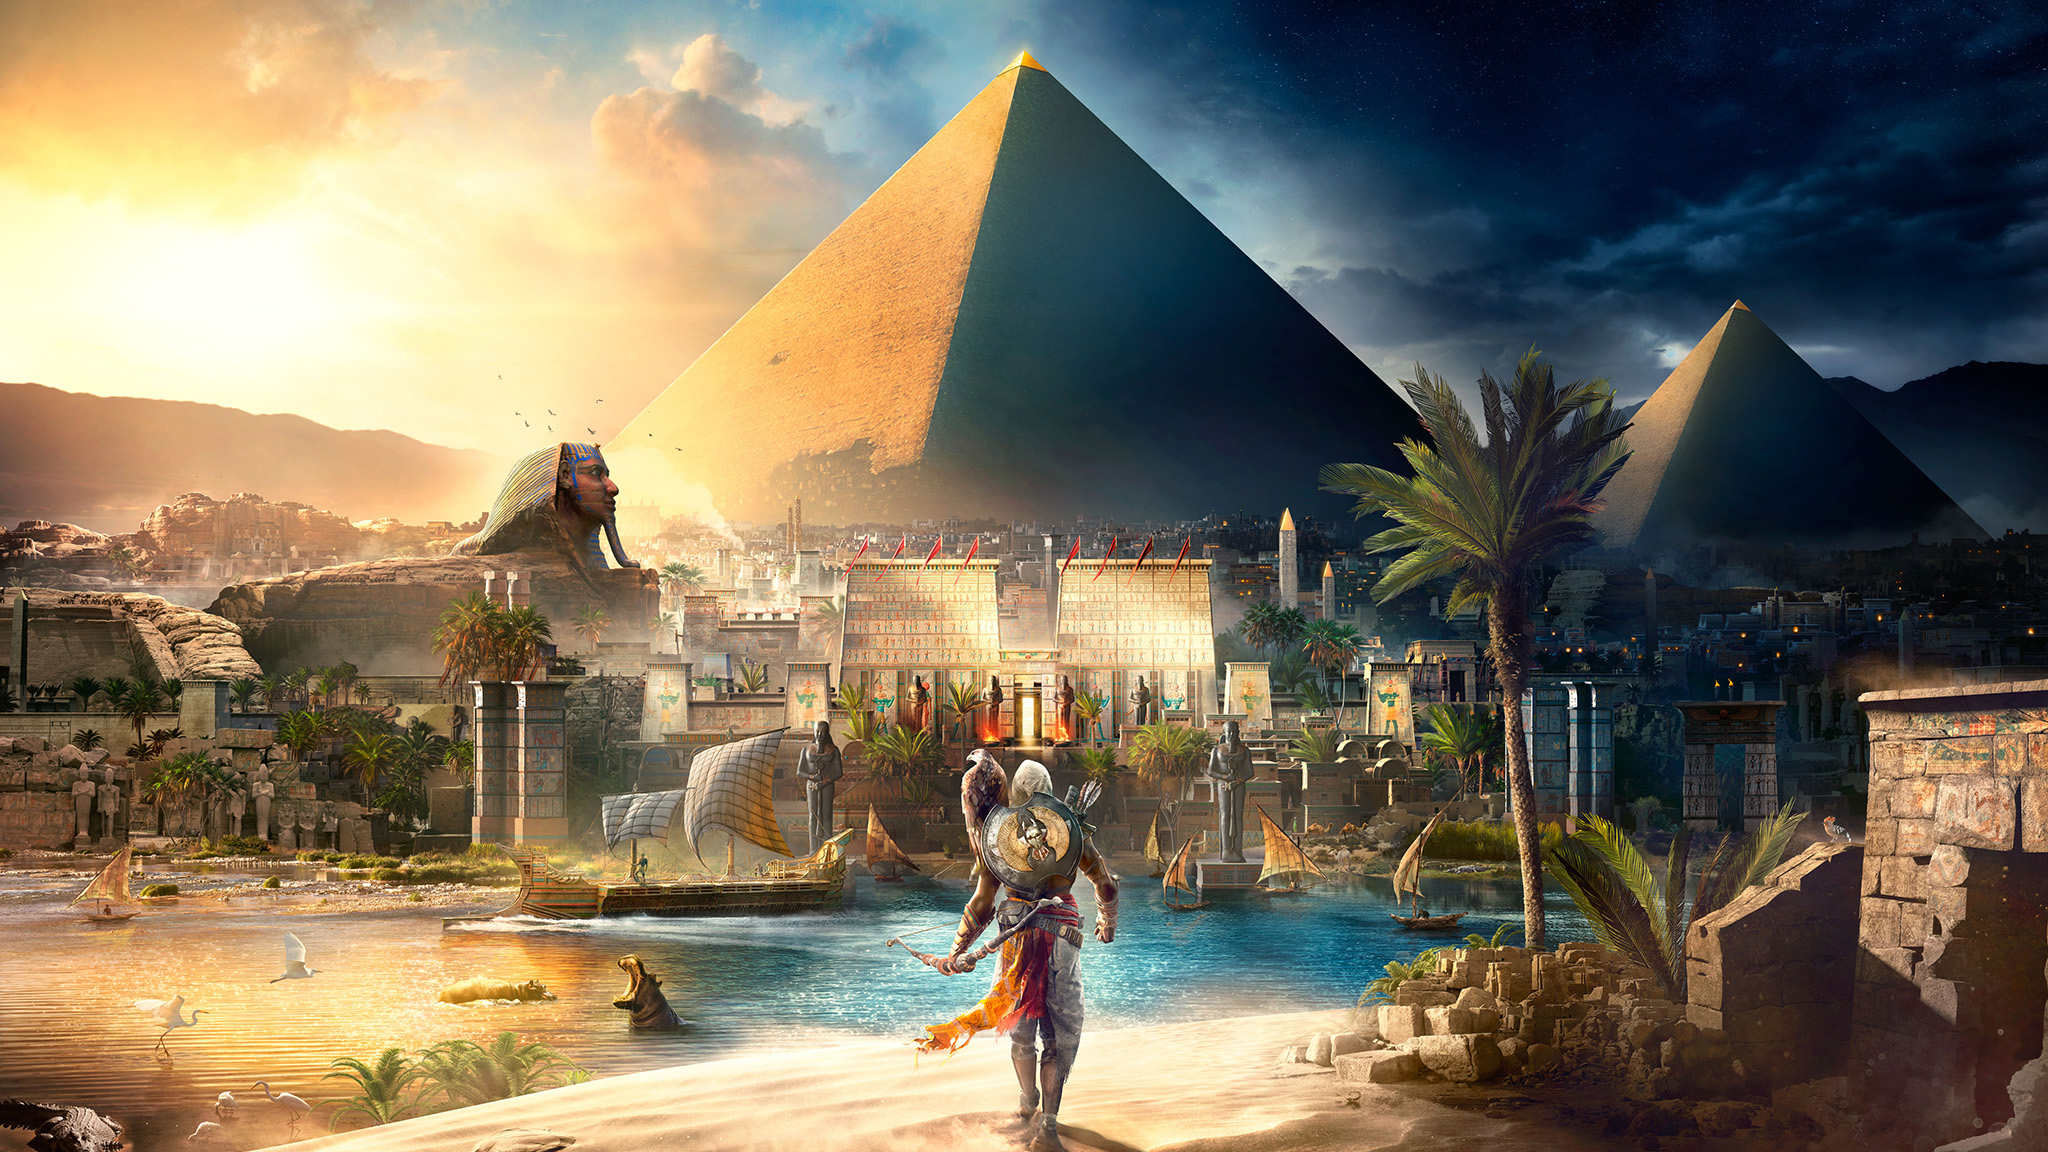 Assassins Creed, Egypt, Pyramids of Giza, Bayek, Eagle, Ubisoft, Landscape, Boat, River, Nile, Video games, Sphynx, Assassins Creed: Origins Wallpaper HD / Desktop and Mobile Background